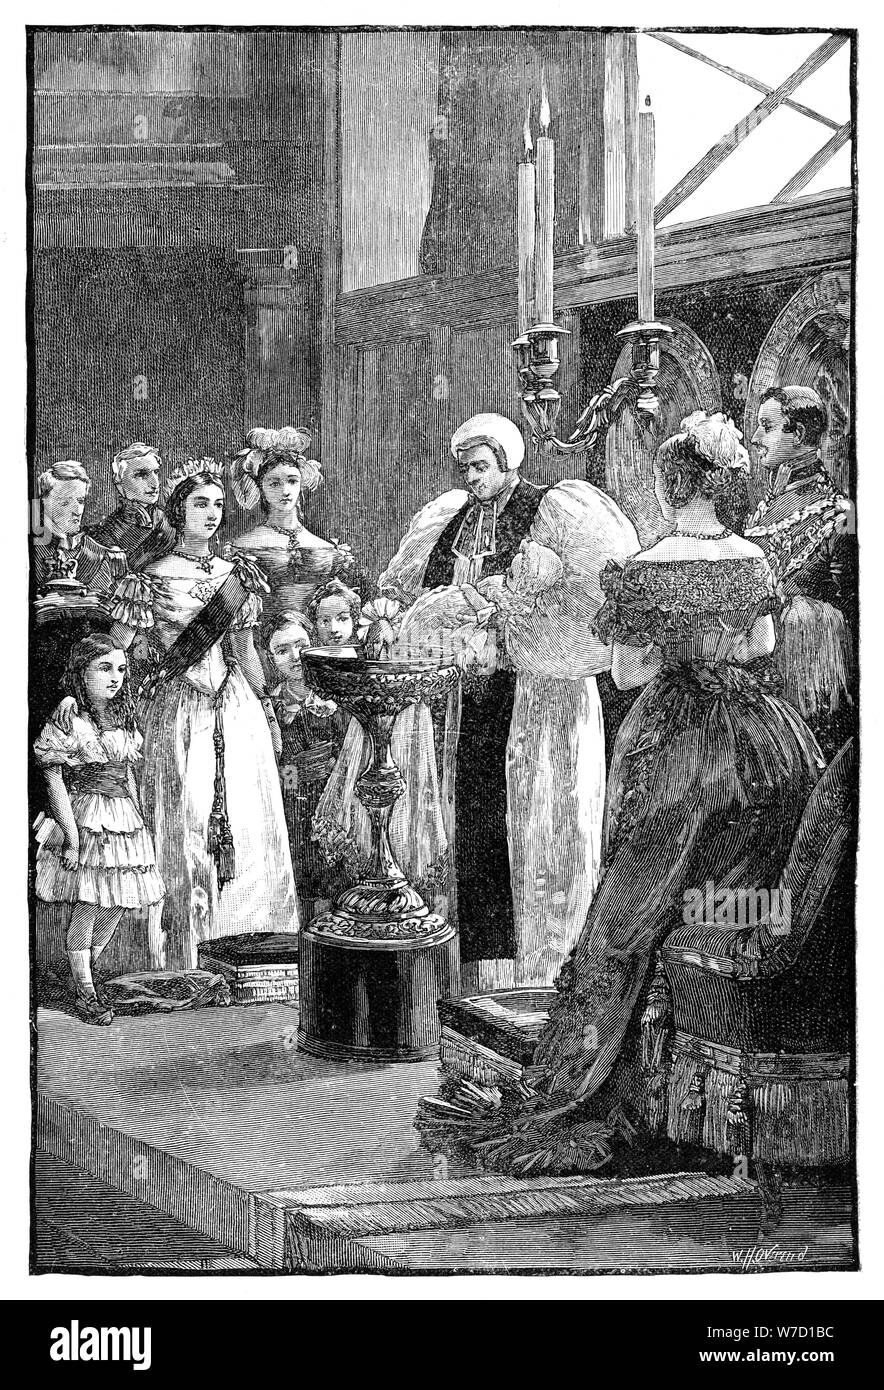 Il Battesimo della Principessa Luisa, c1848, (1900).Artista: William Overend Heysham Foto Stock